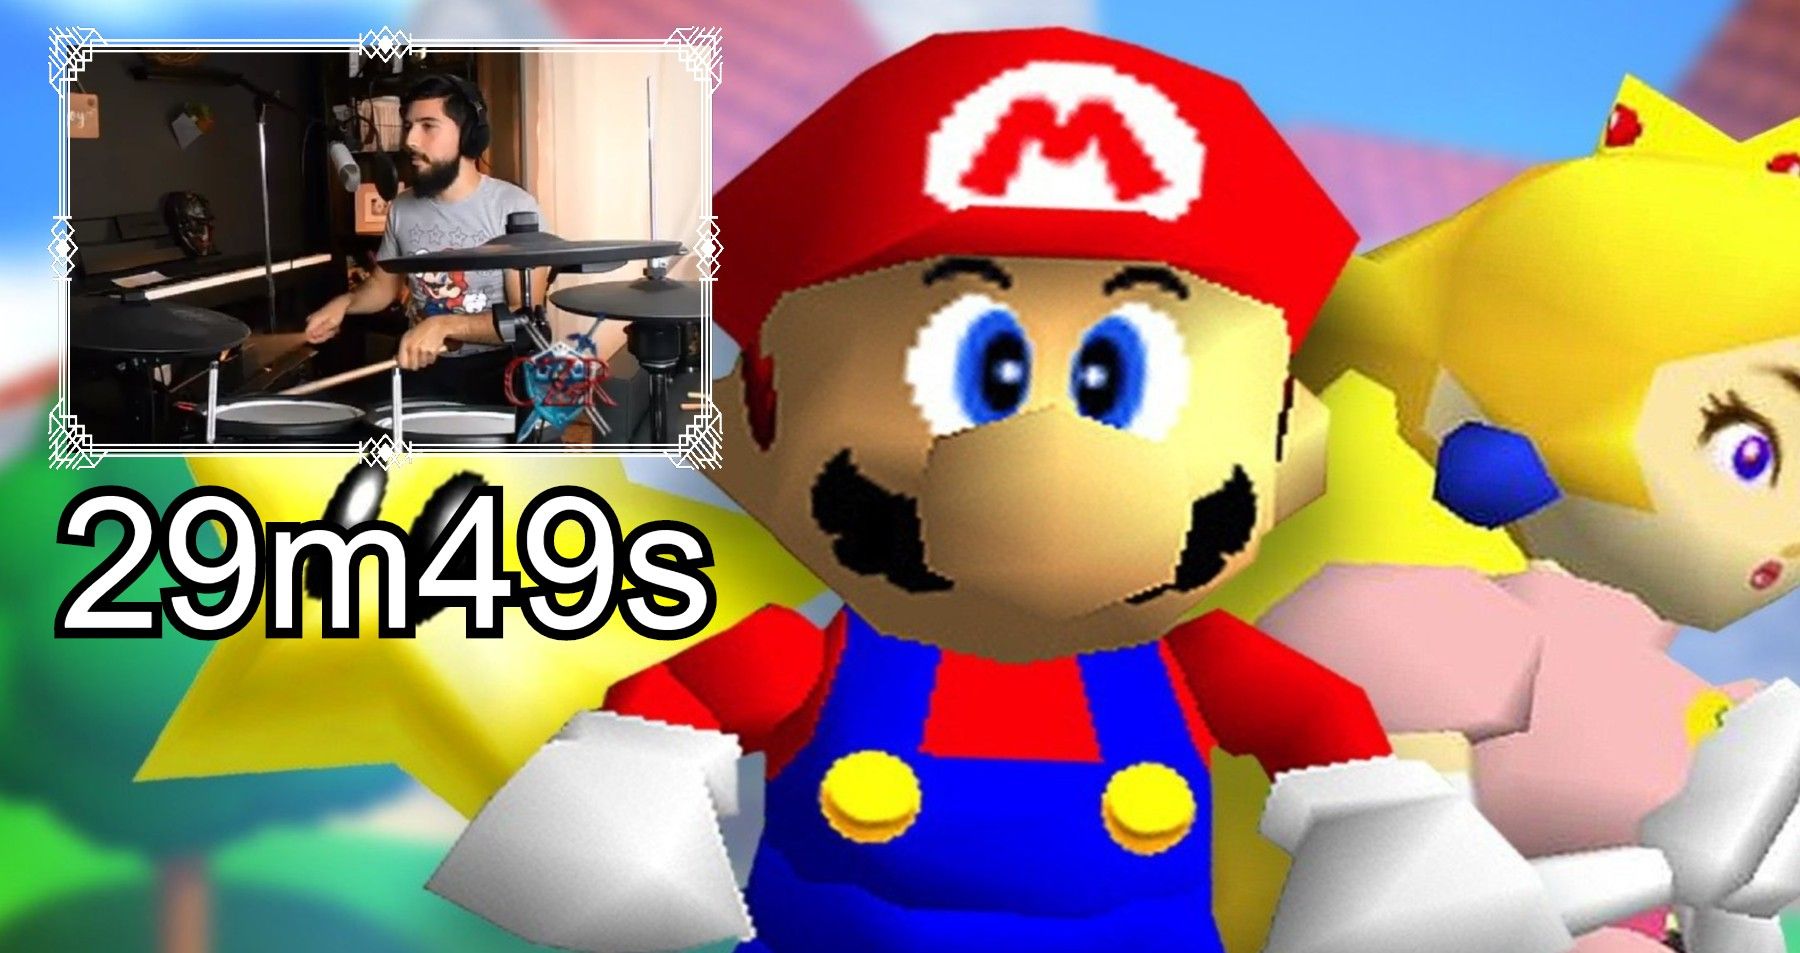 CZR 29m49s Drumkit Super Mario 64 Speedrun